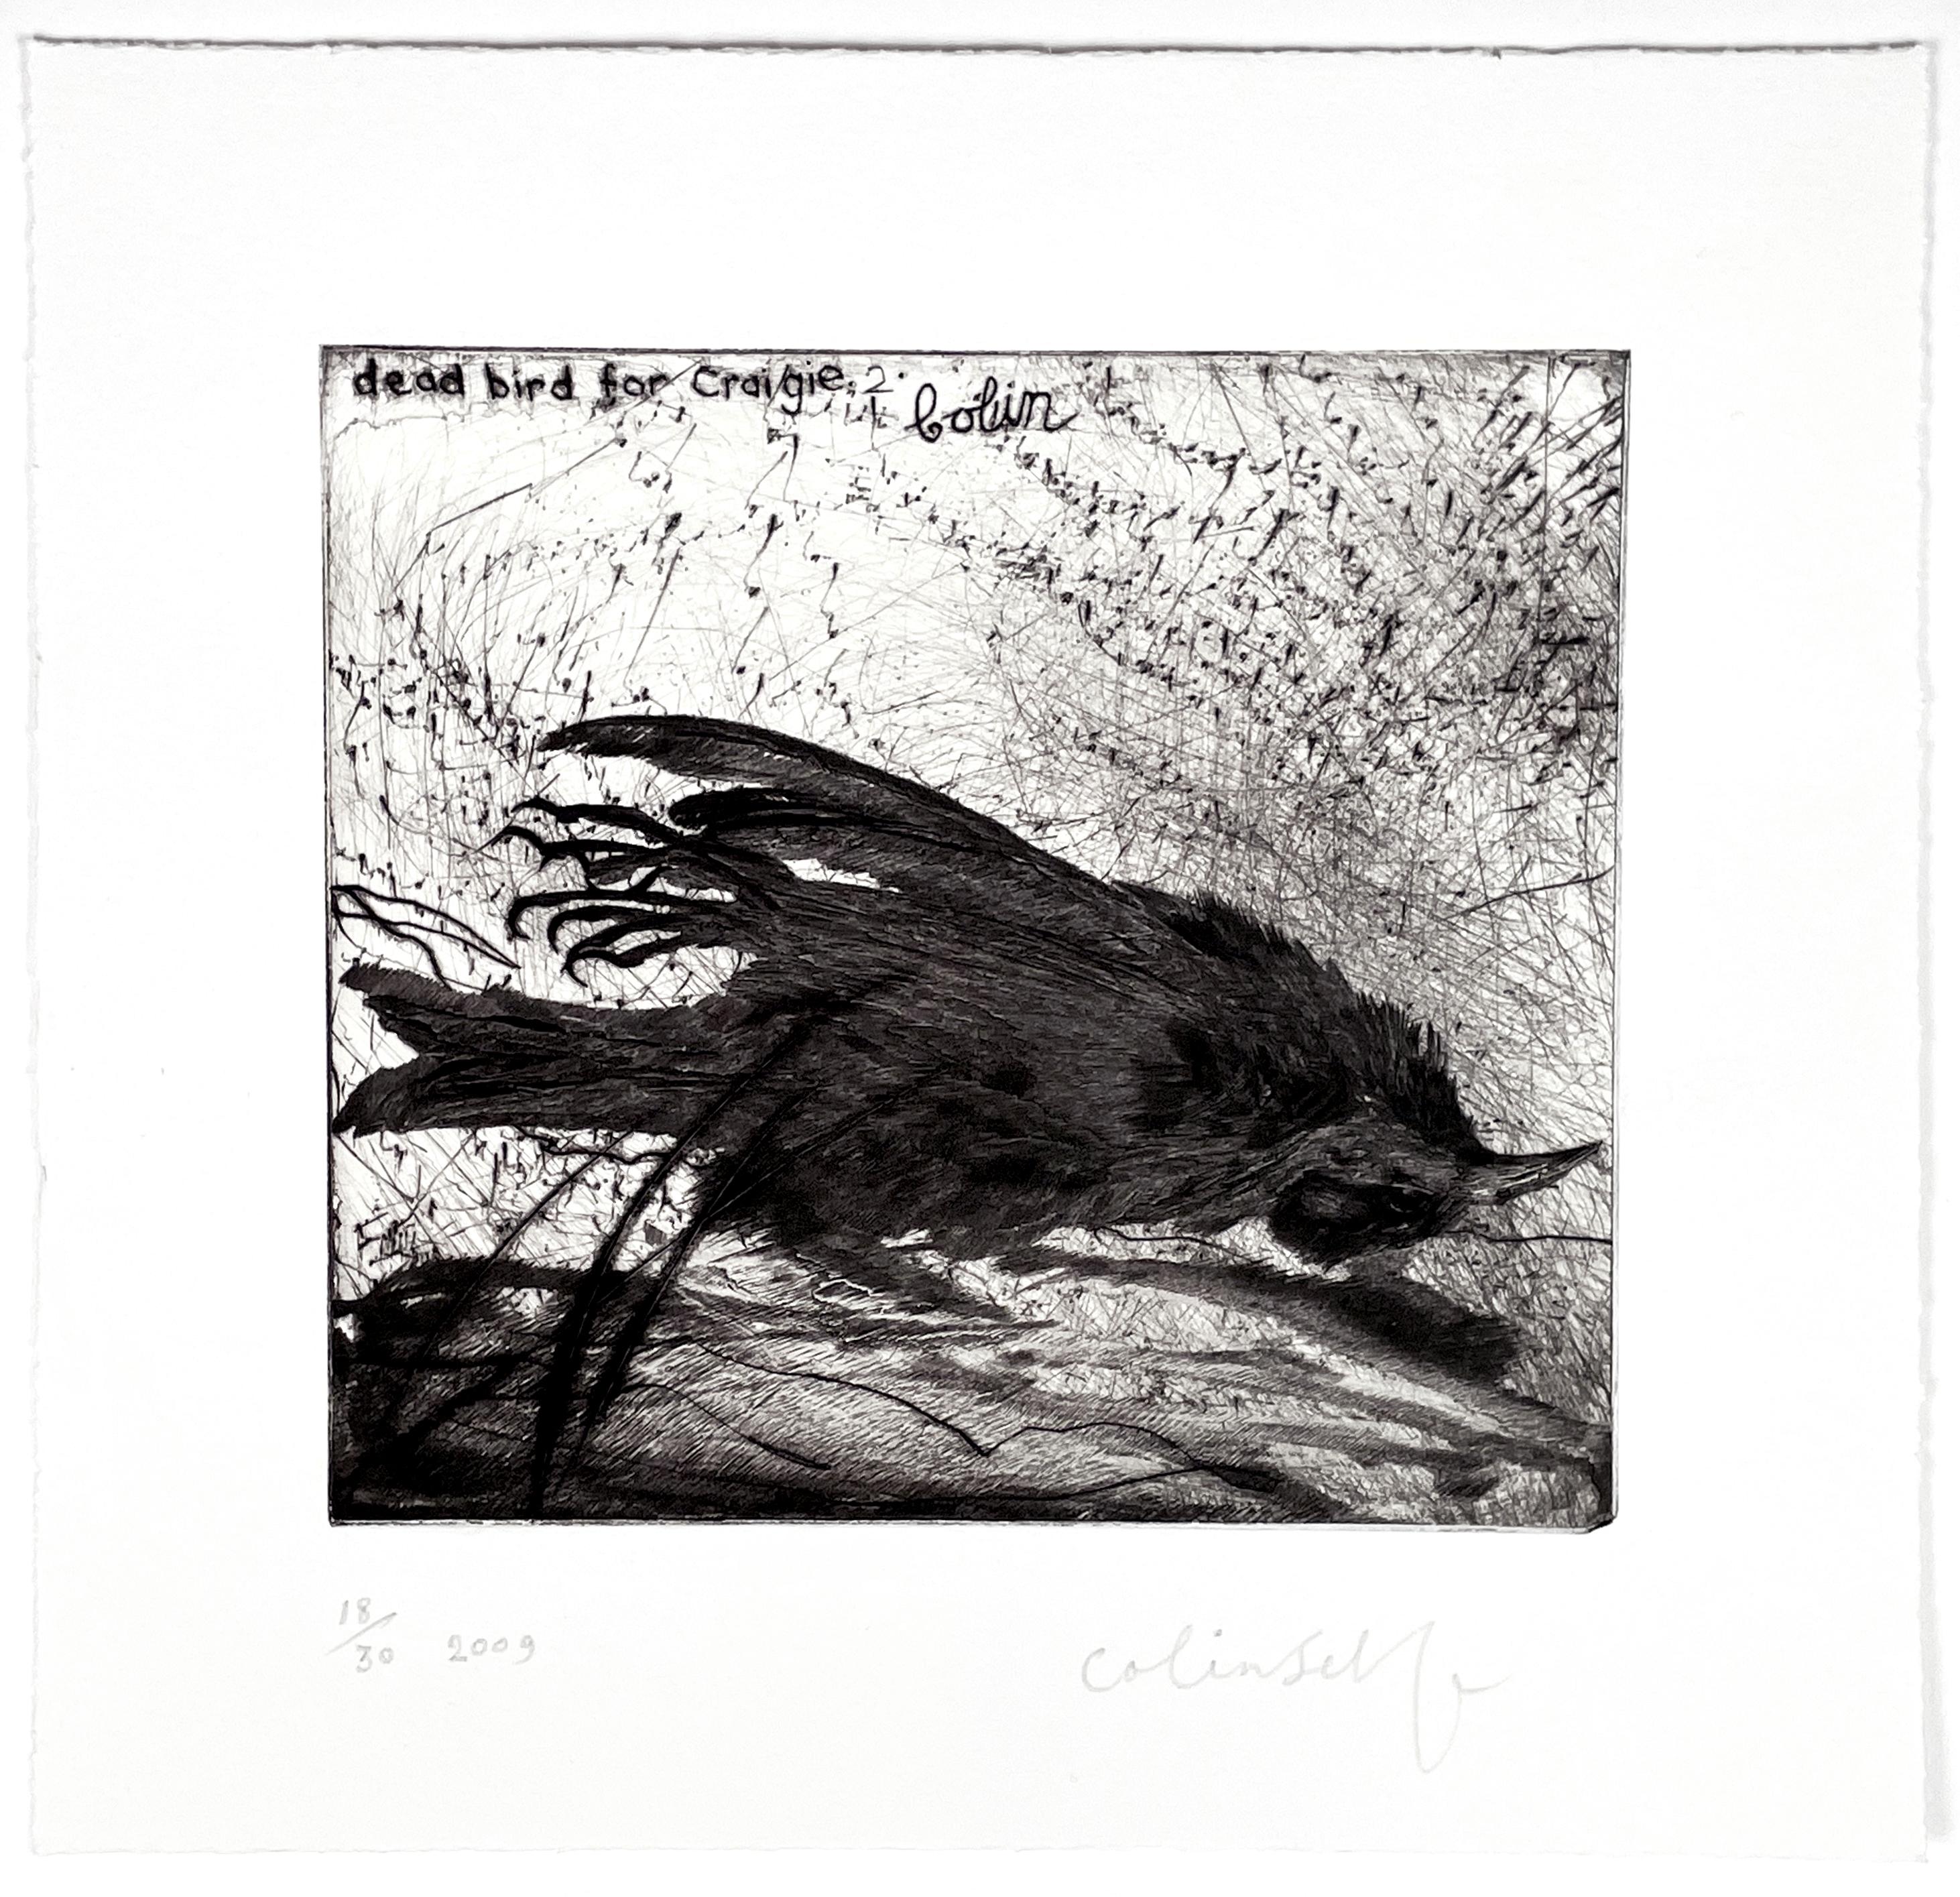  Oiseau mort pour Craigie n° 2 - Expressionniste Print par Colin Self